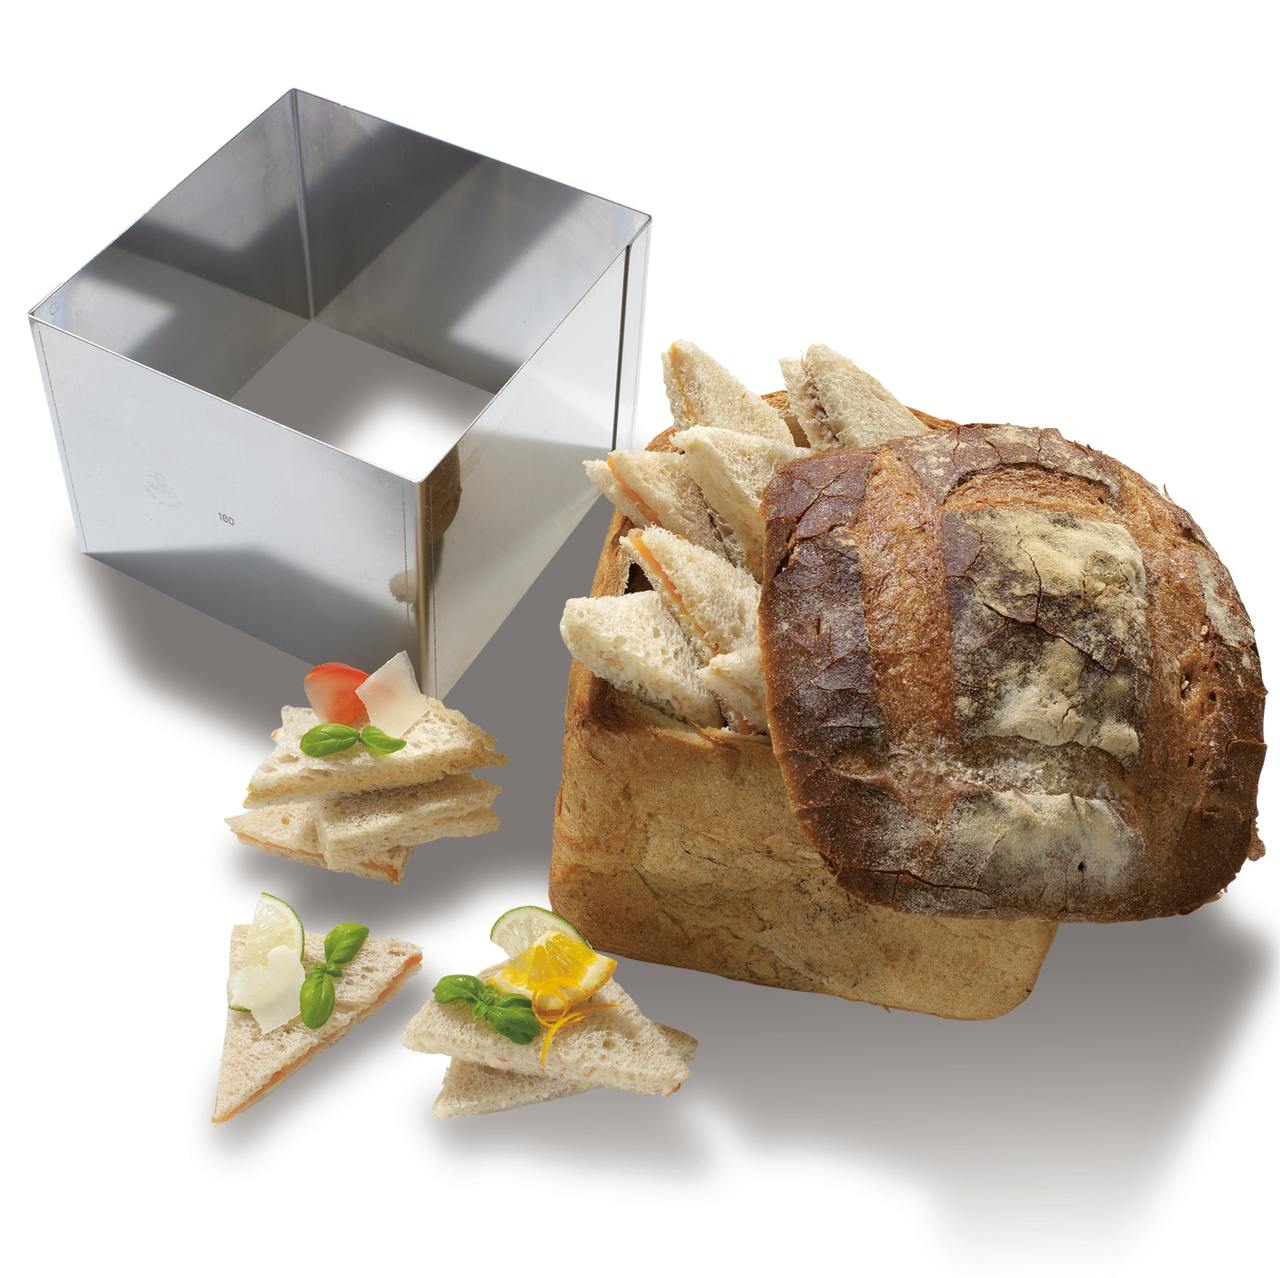 Moule pain surprise ou club sandwich anti-adhésif avec couvercle